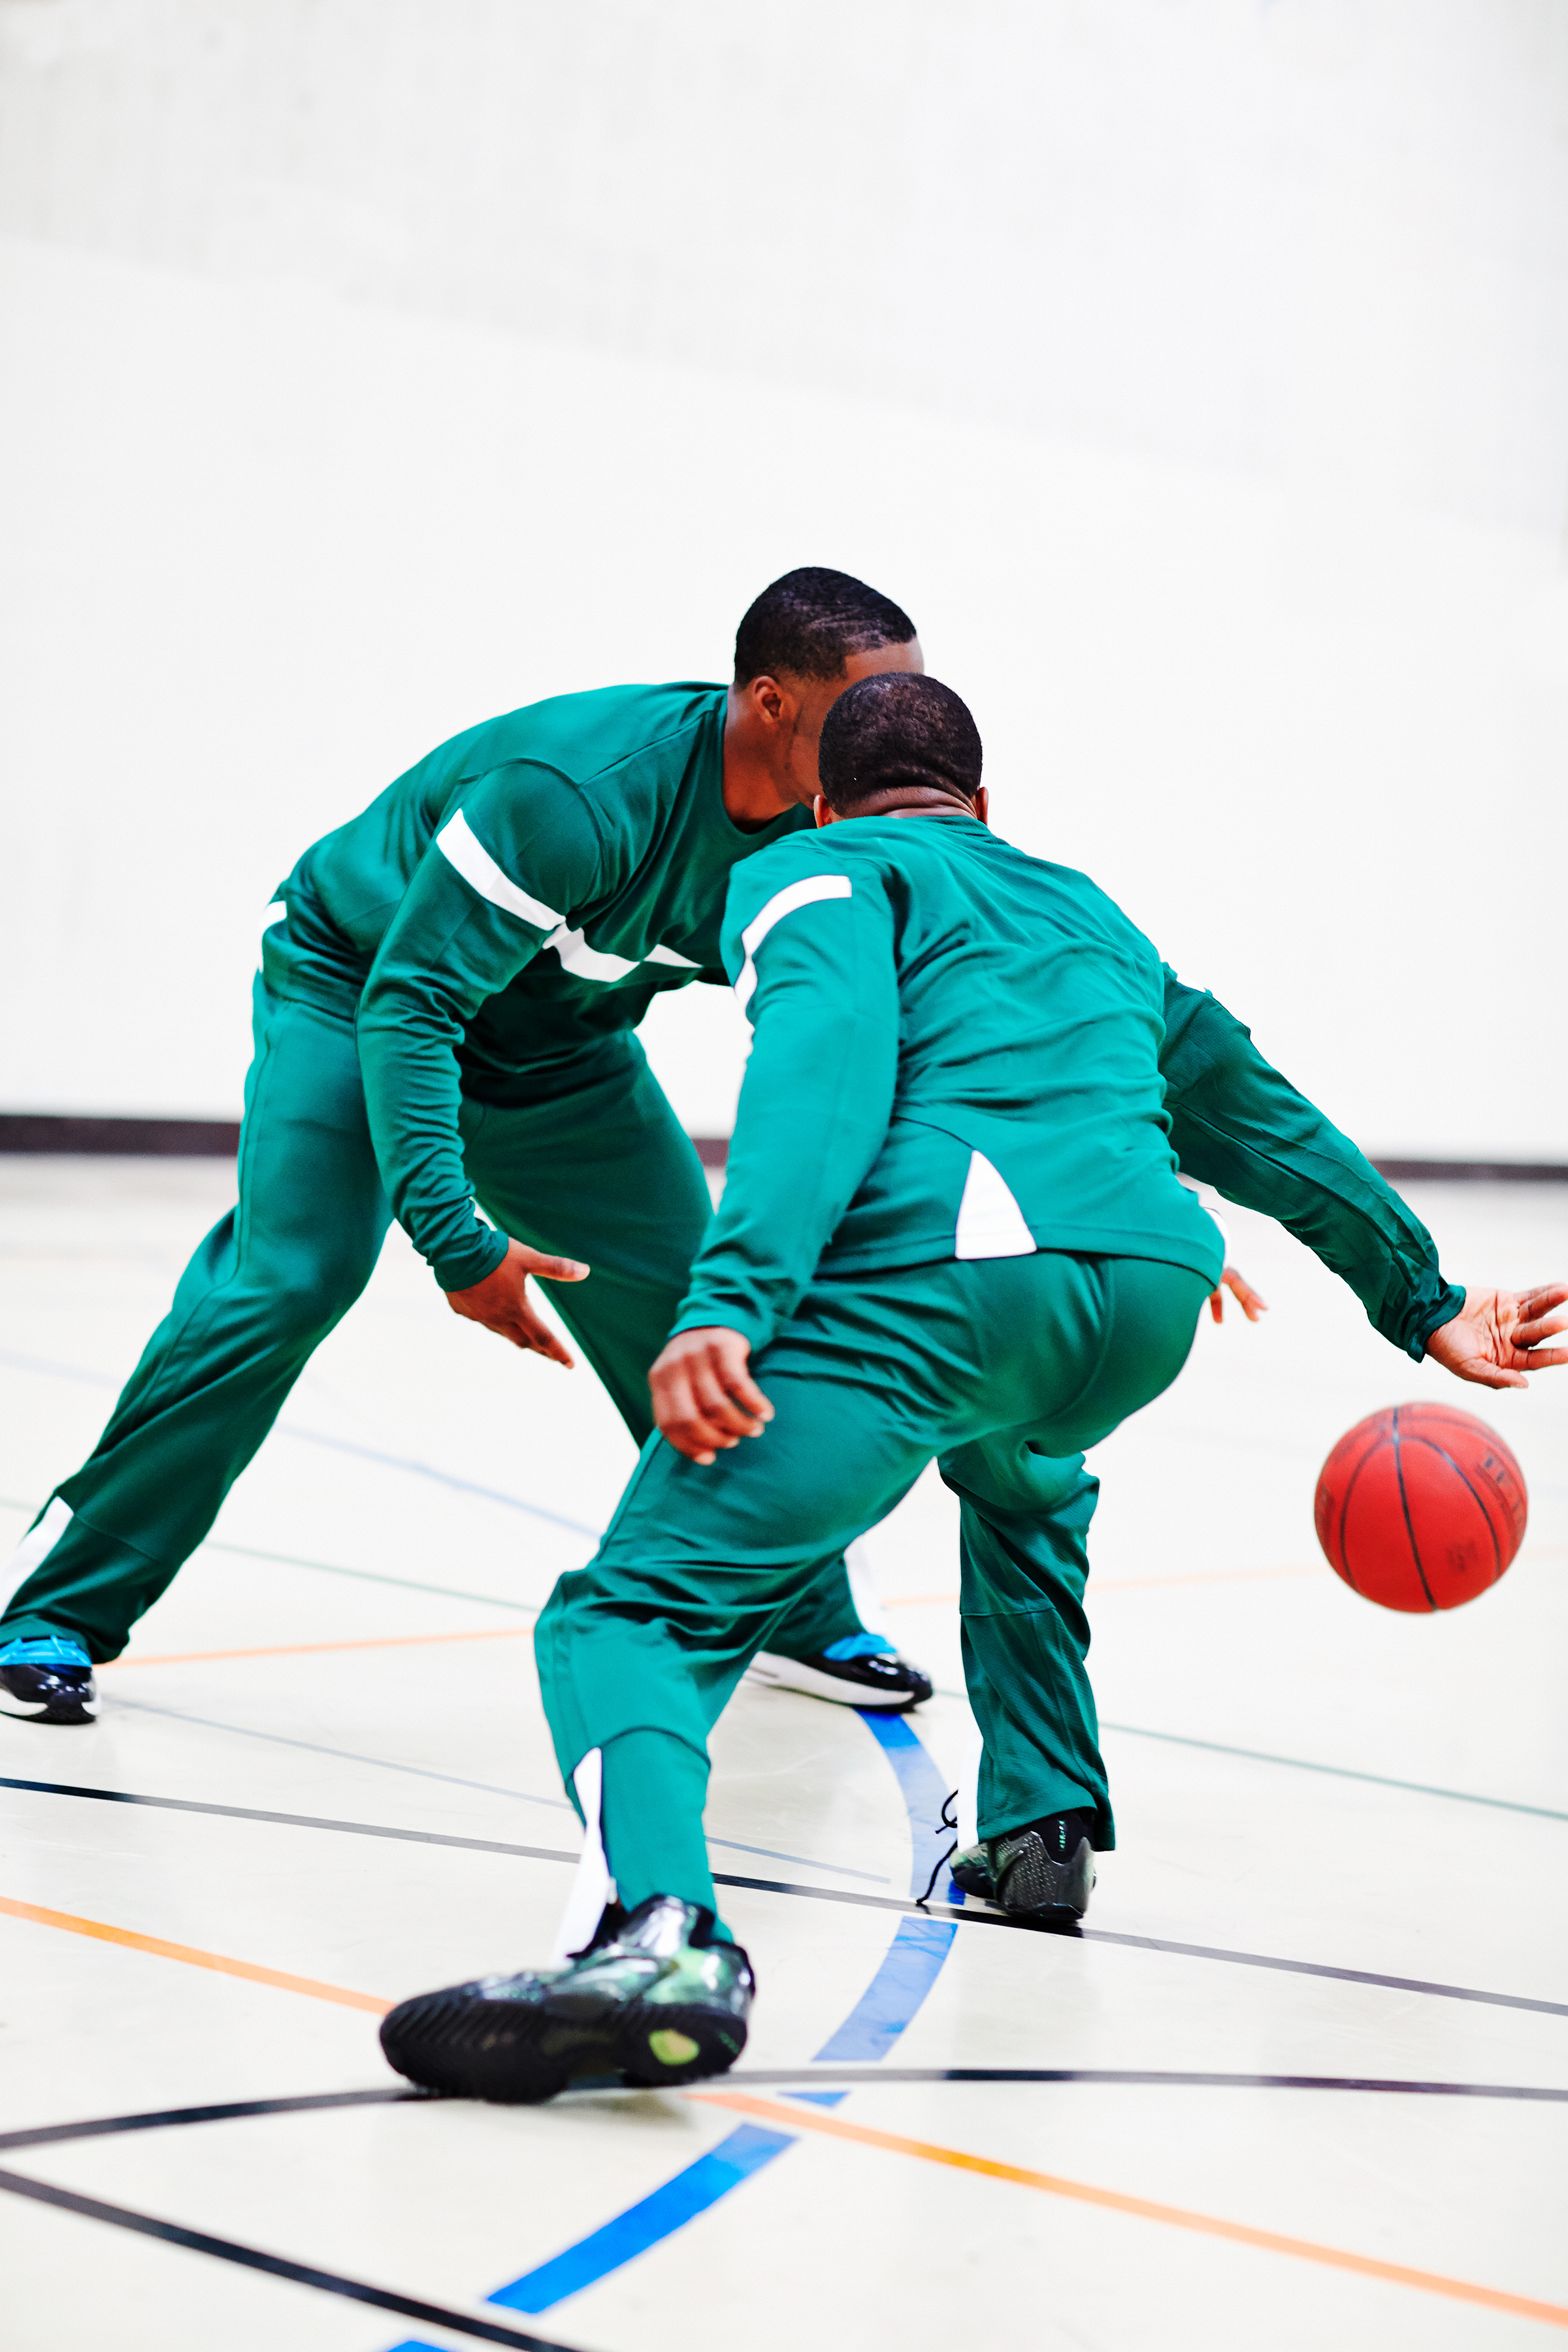 GMR_Chobani_Basketball-Court-0939